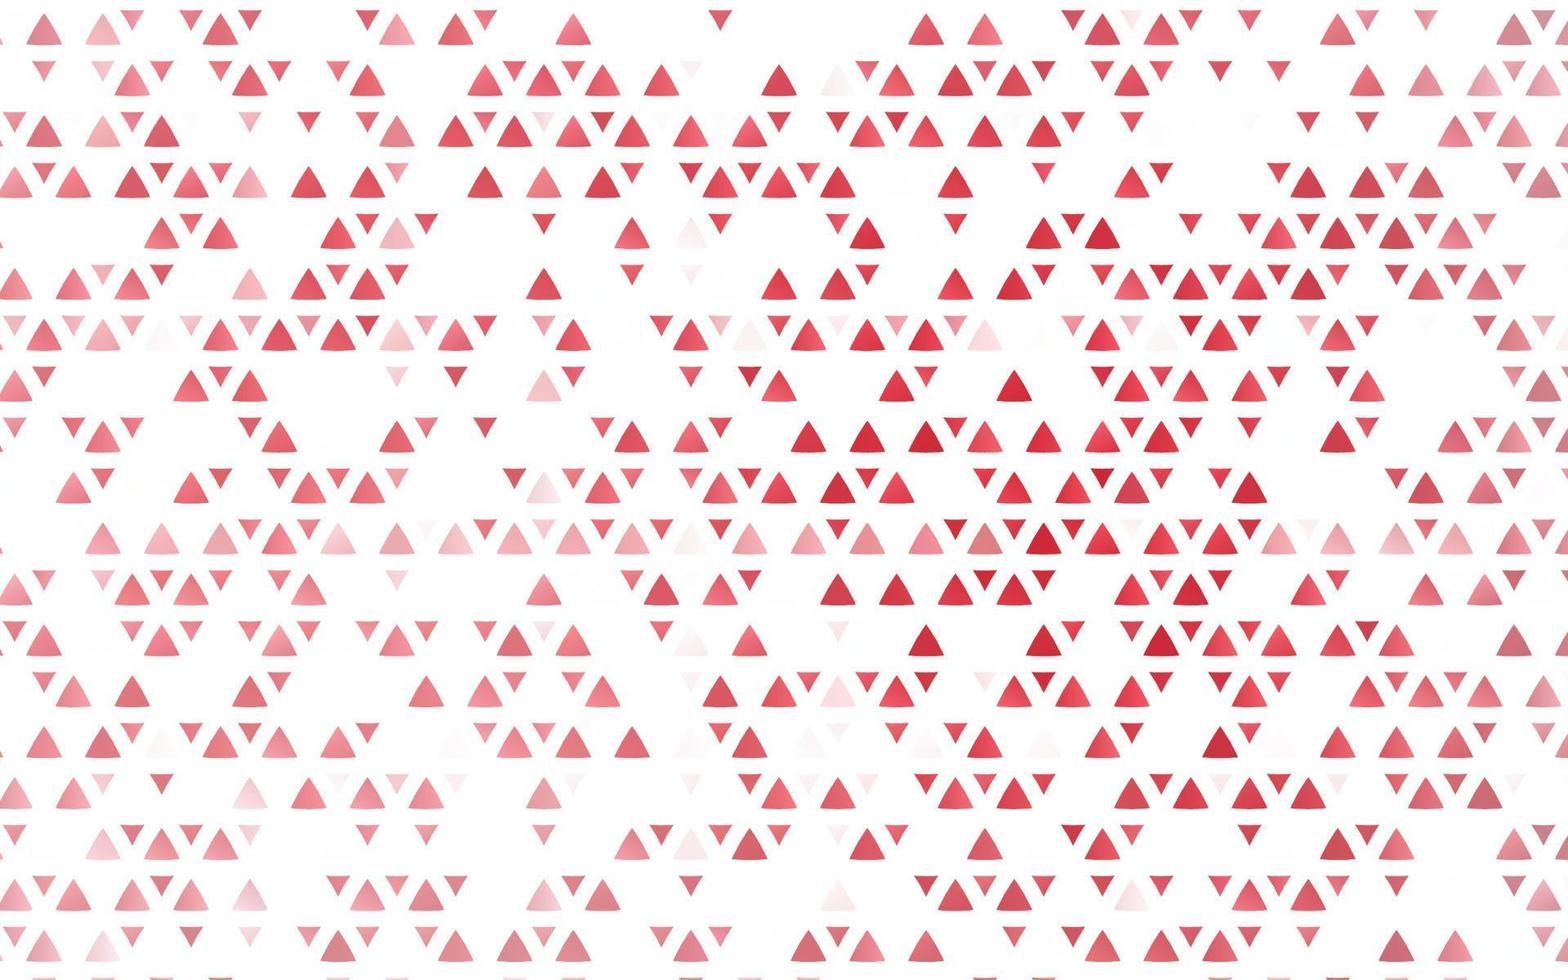 trama vettoriale rosso chiaro in stile triangolare.